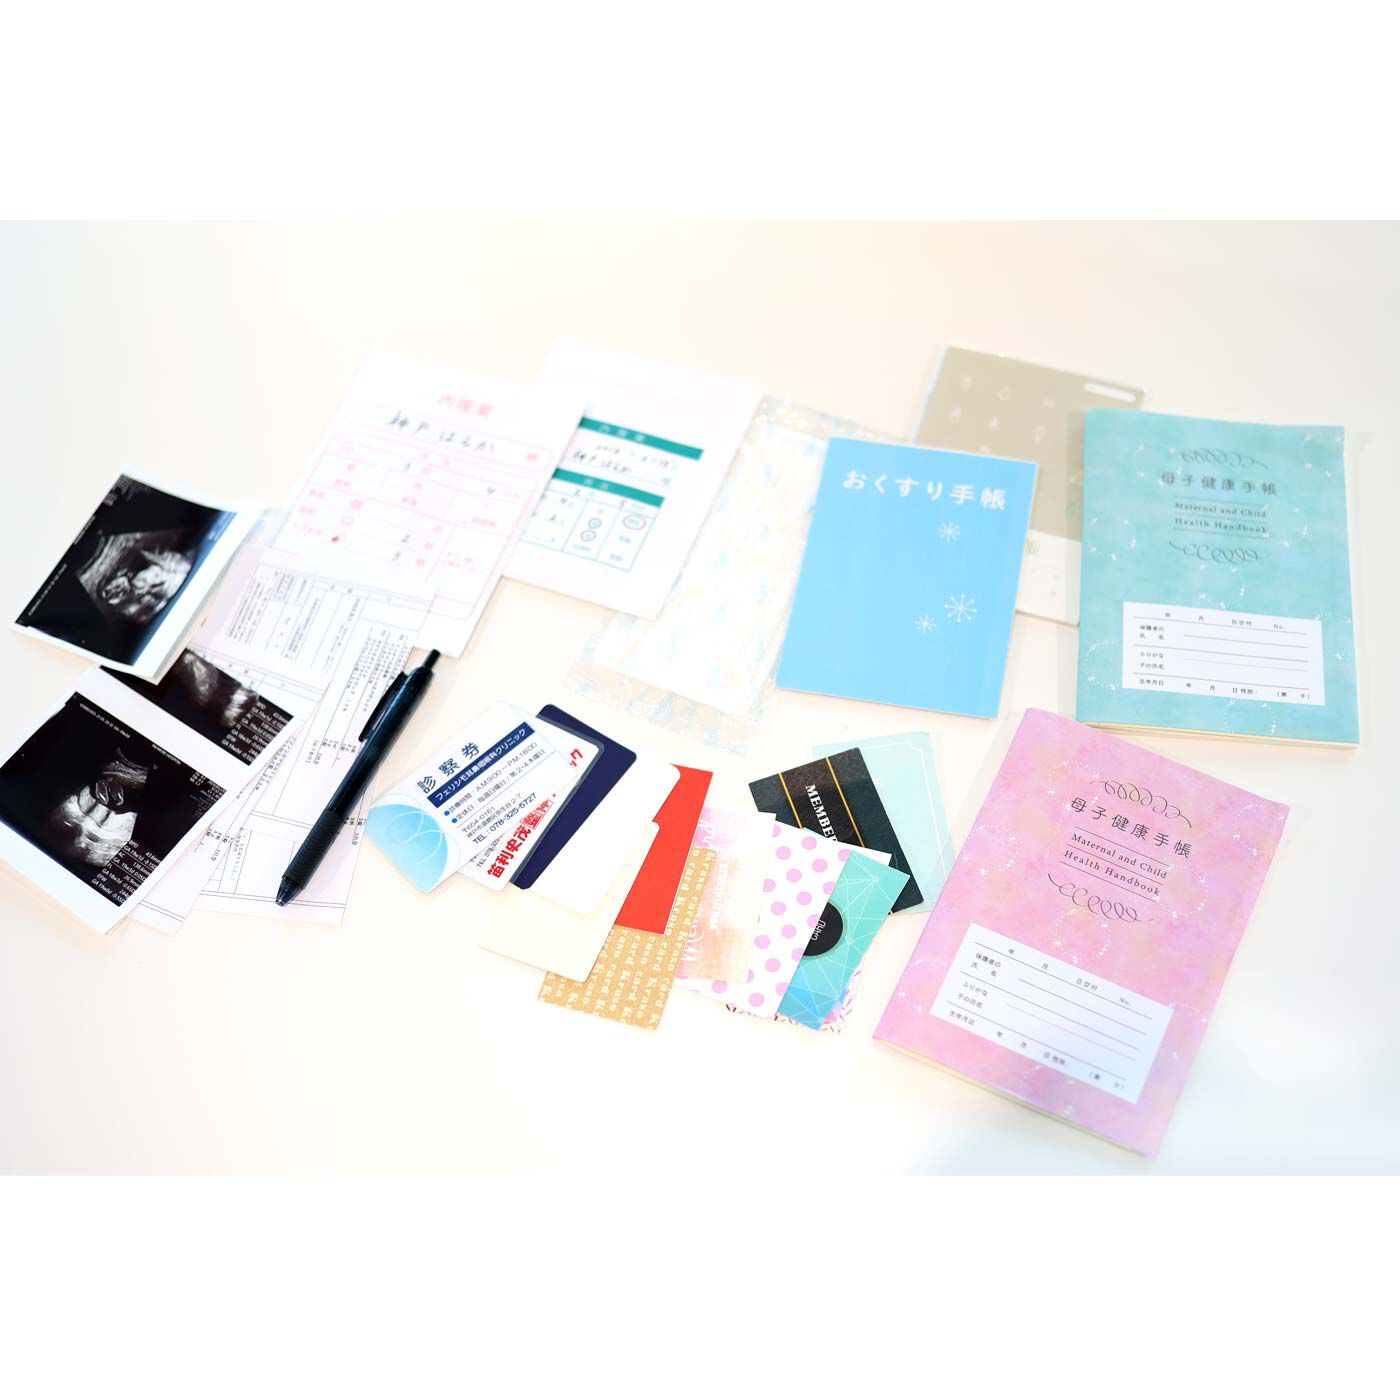 フェリシモMama|Moredde　ジャバラポケットで仕分け上手　軽くてスリムな母子手帳ケース〈ピンク〉|2人分のお薬手帳と母子手帳、診察券がしっかり収納できます。